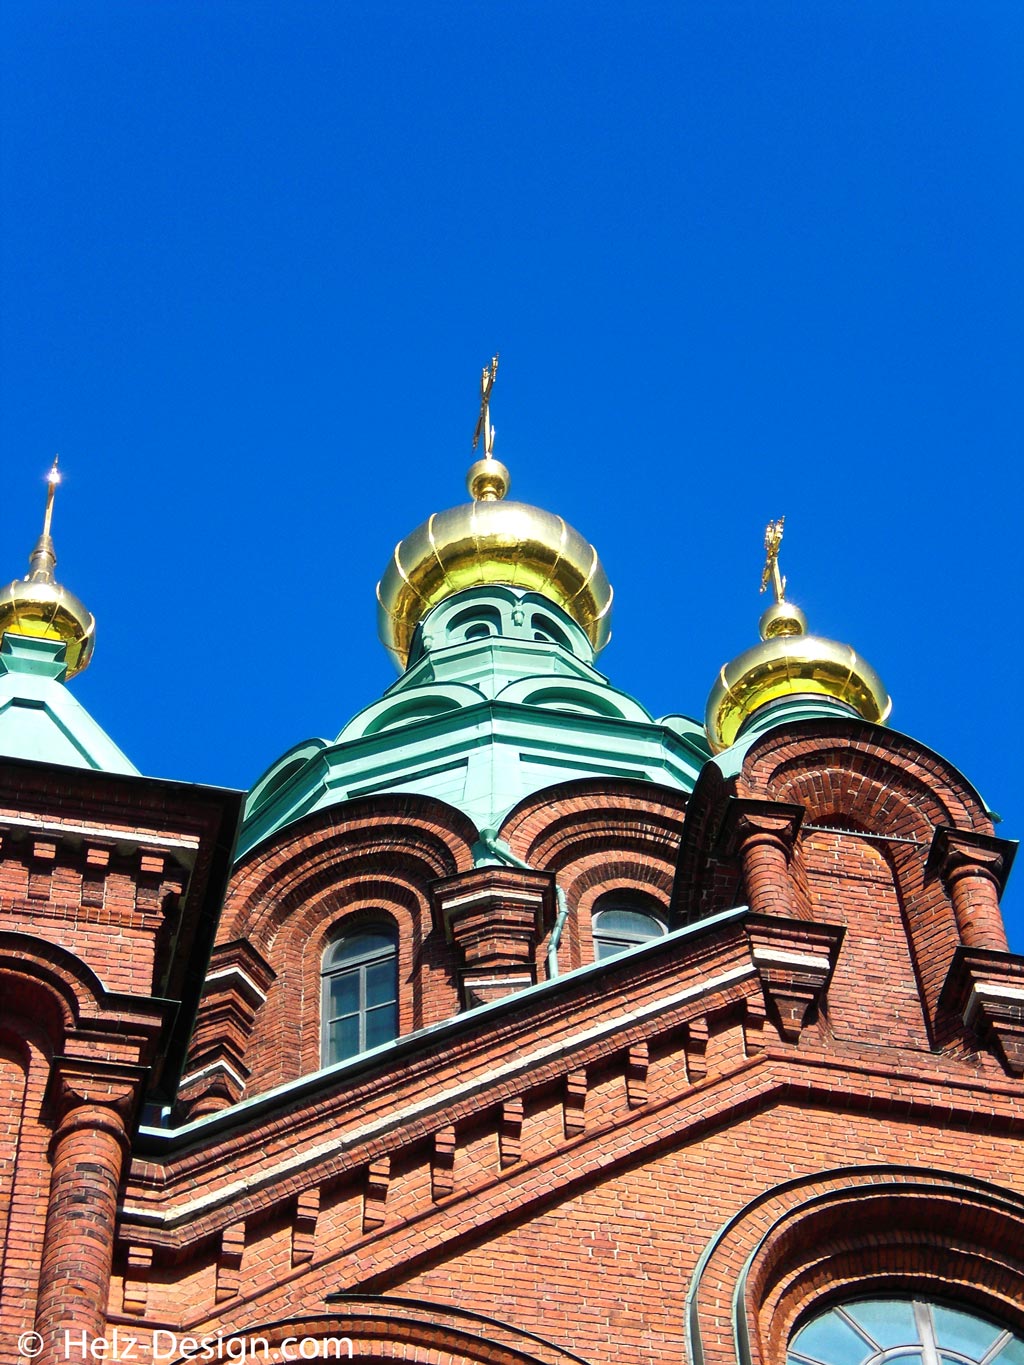 Dachdetail … wunderschön das Gold auf den Türmen